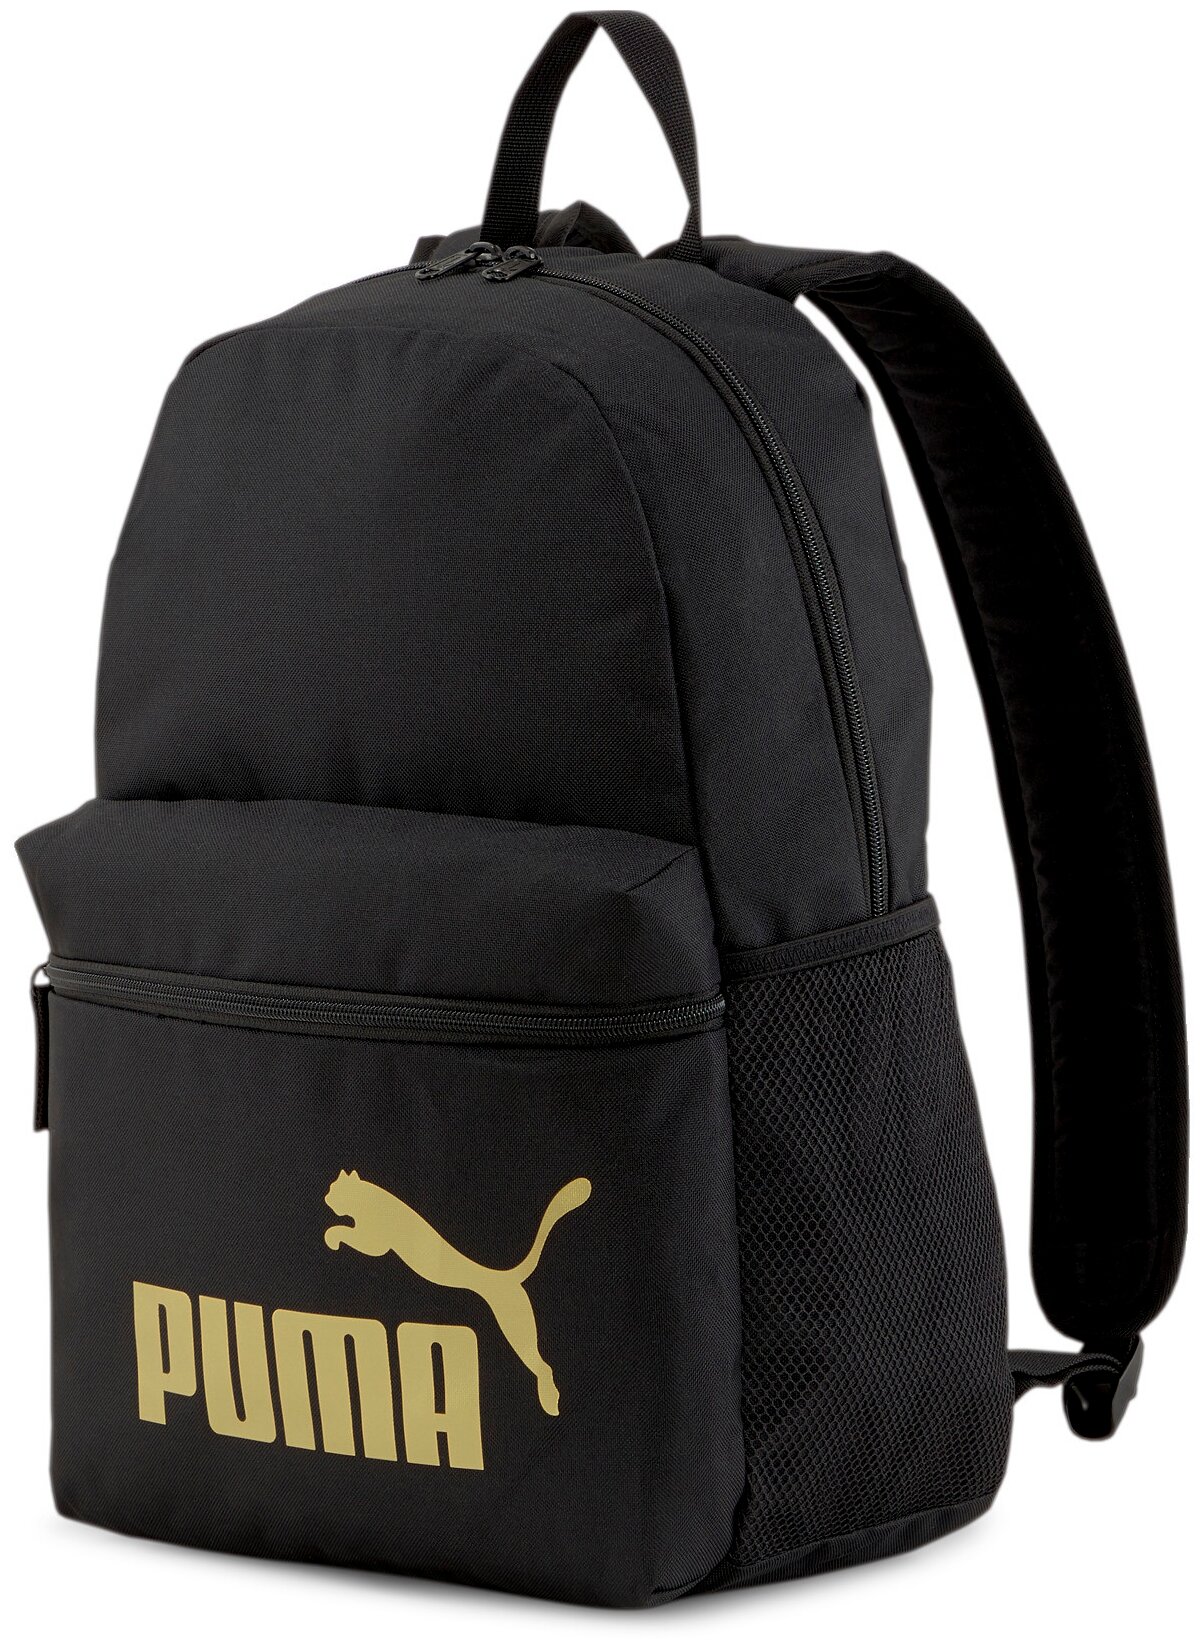 Рюкзак, PUMA PUMA Phase Backpack, Мужской, размер X ; Black-Golden logo